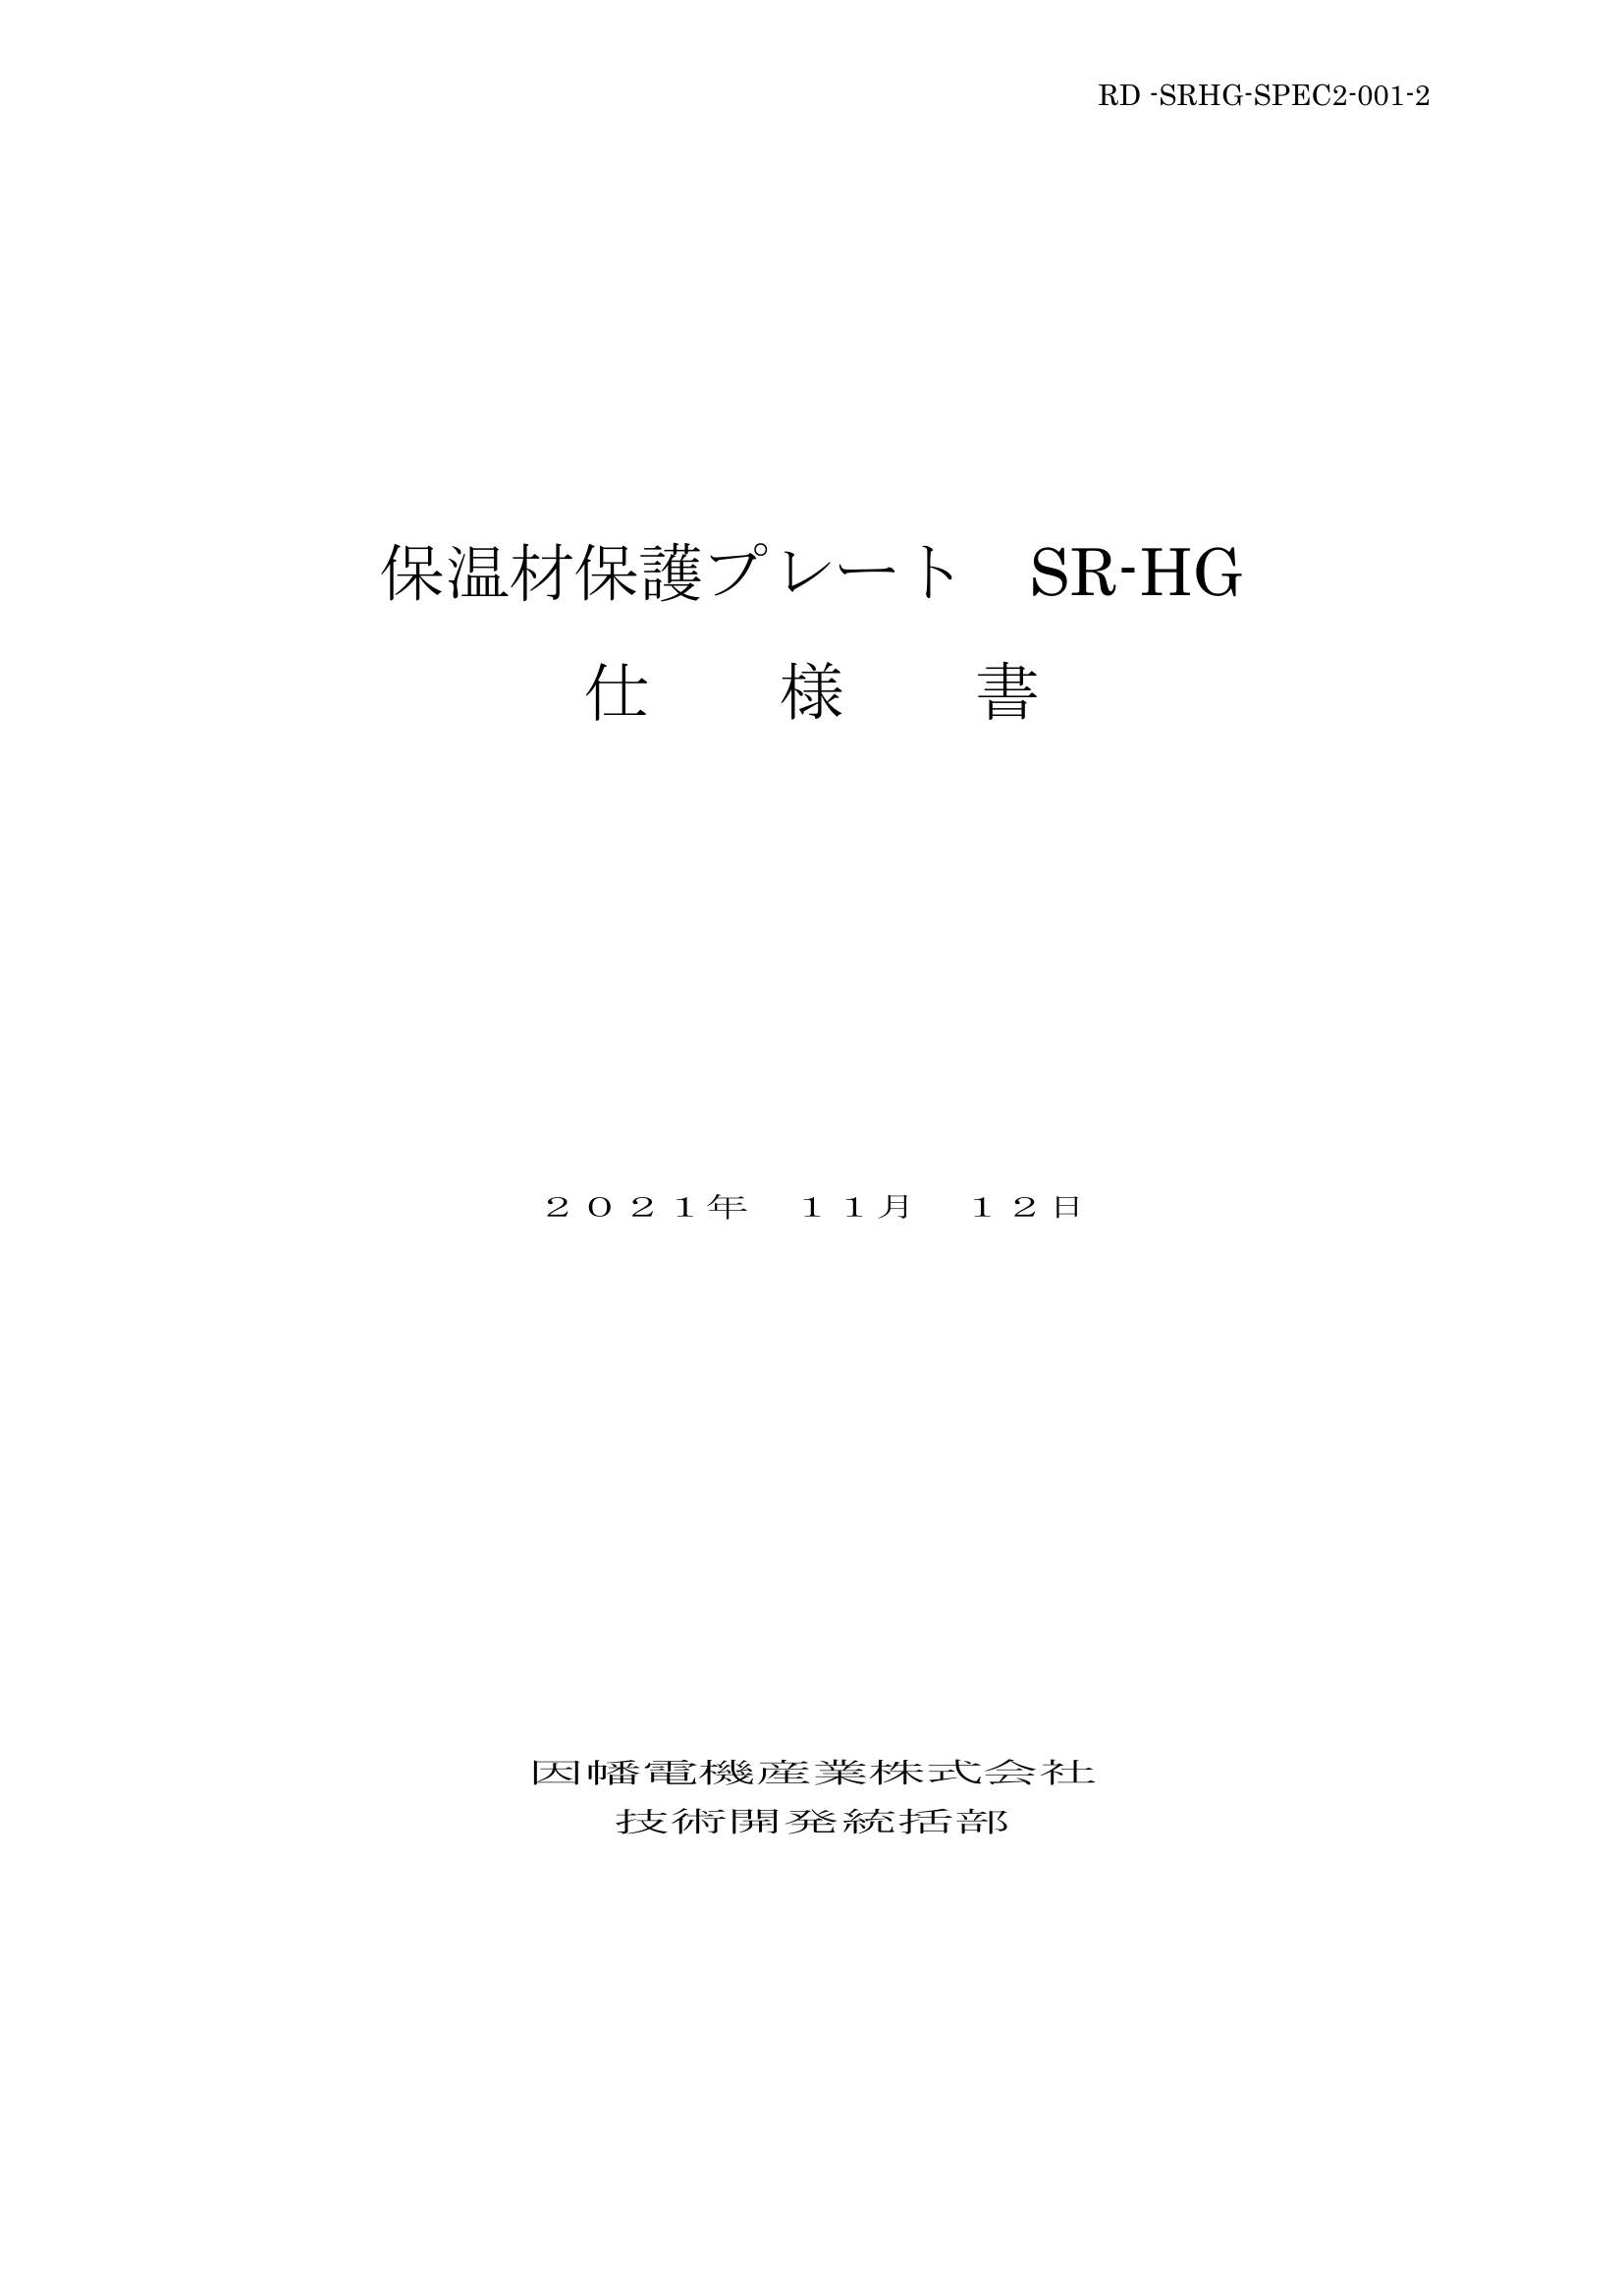 SR-HG_仕様書_20211112.pdf